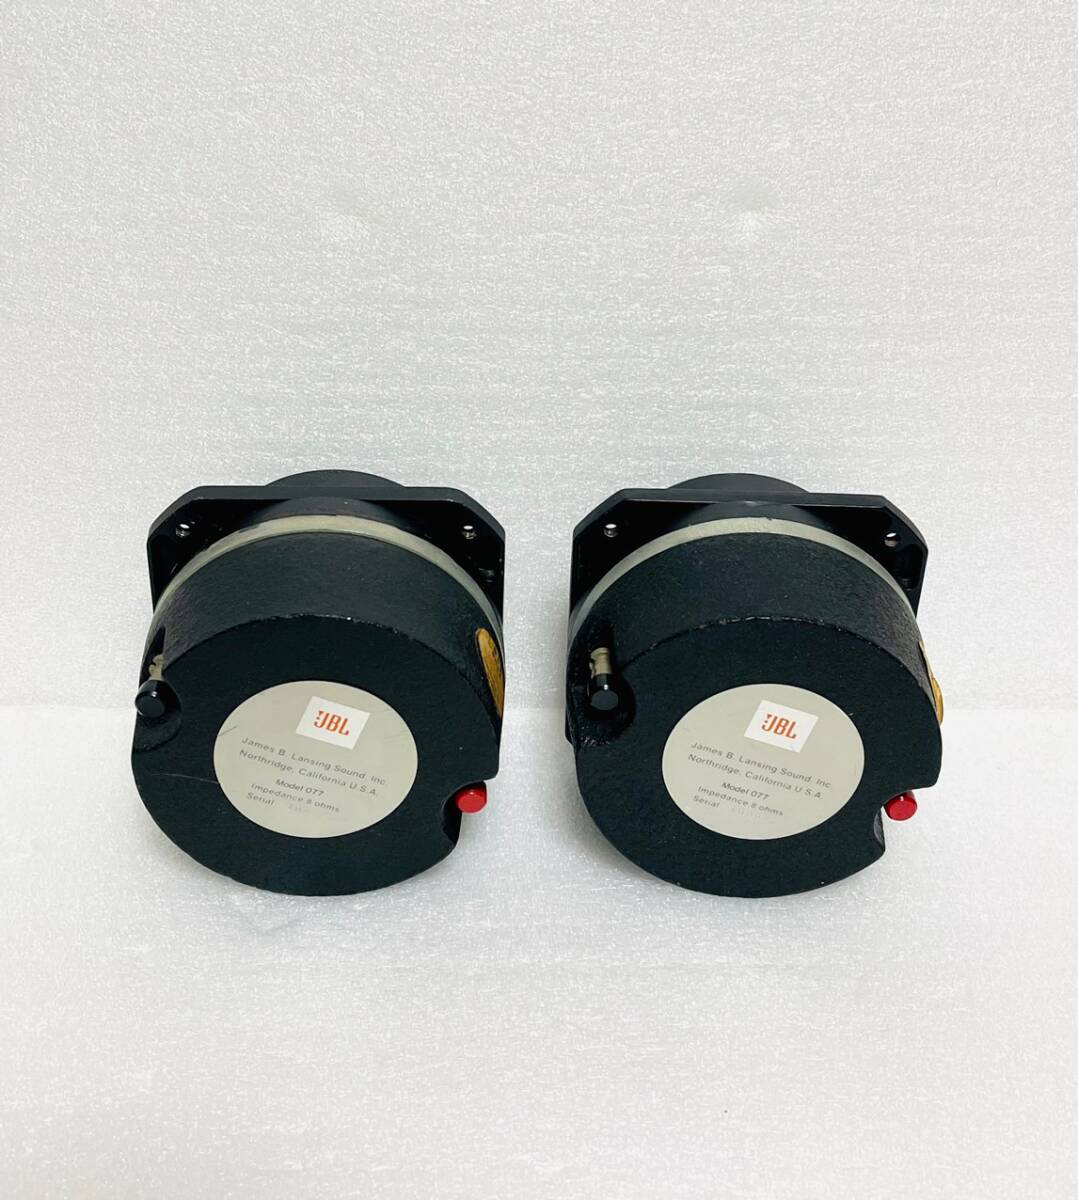 JBLje- Be L 077tsui-ta- speaker pair.